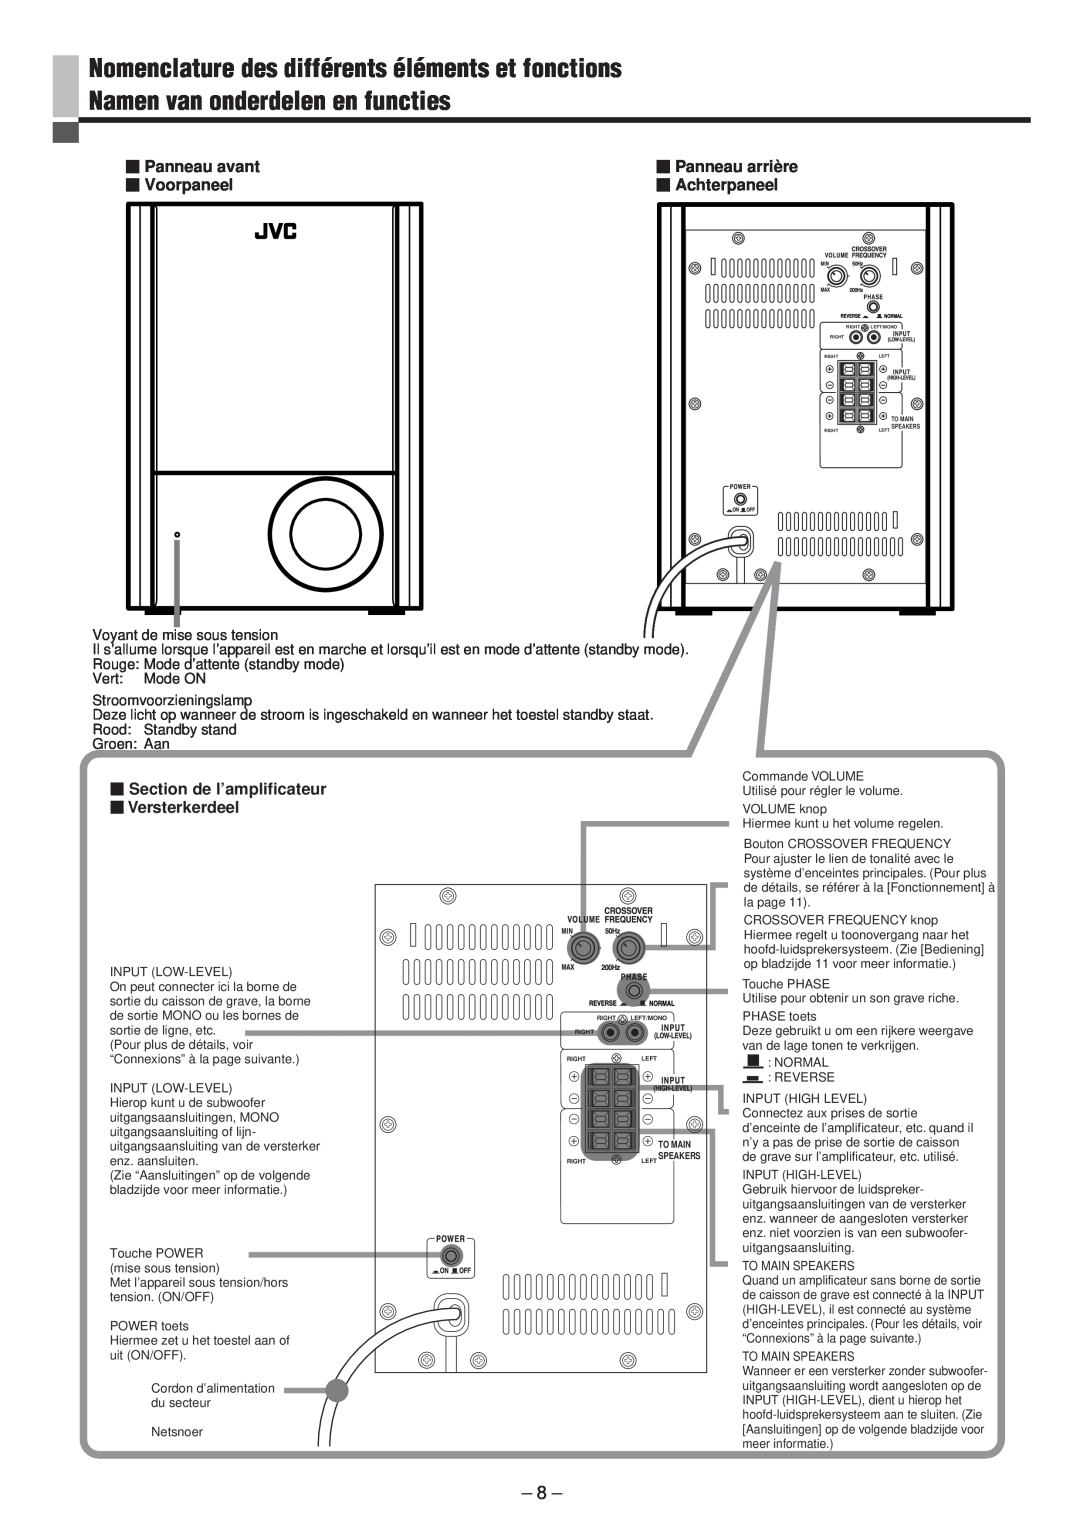 JVC LVT0673-001A manual Panneau avant Voorpaneel, Panneau arrière, Achterpaneel, Section de l’amplificateur Versterkerdeel 